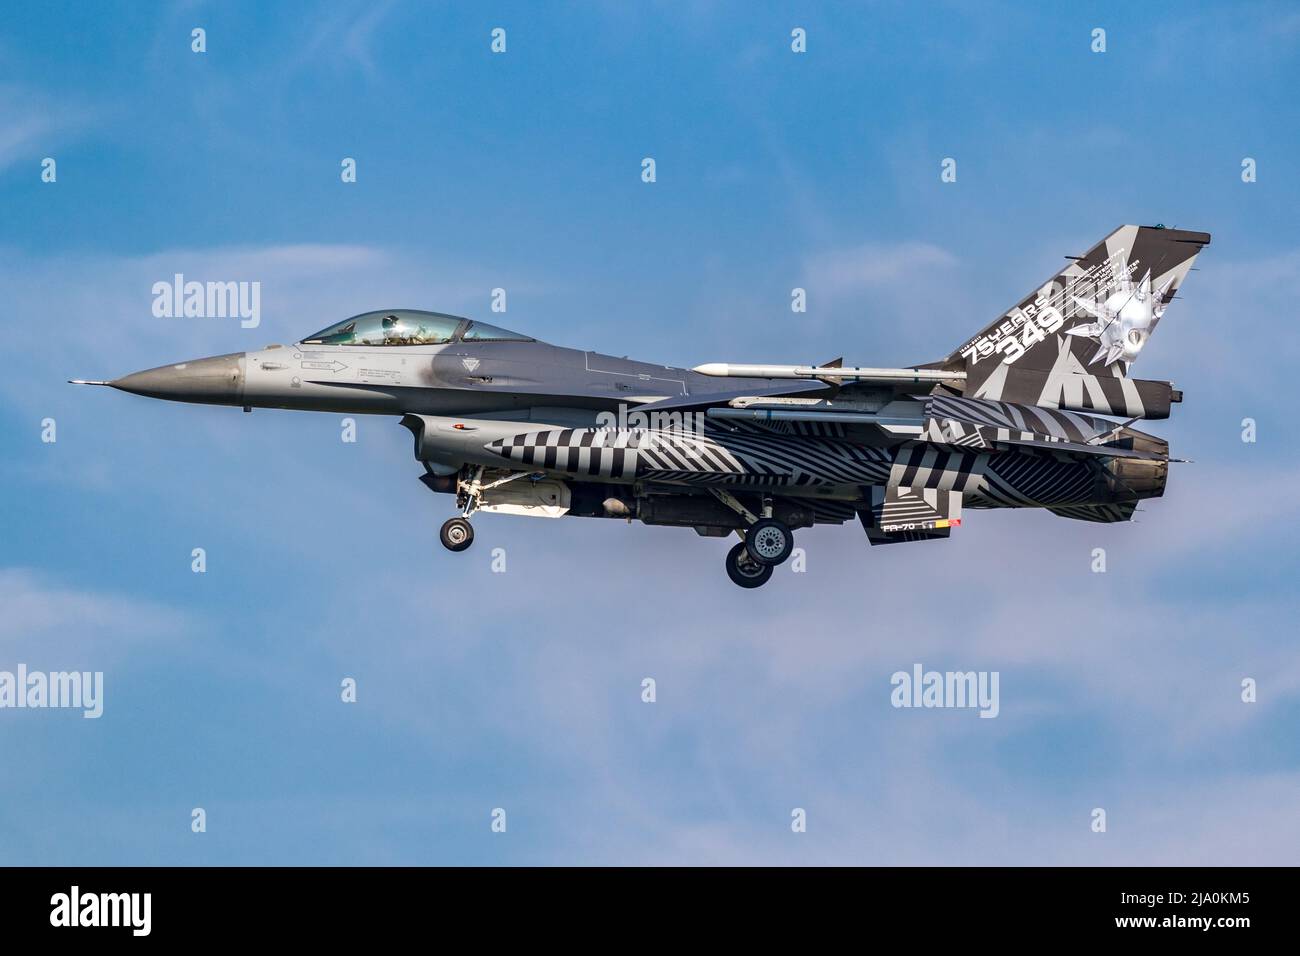 Speciale jet F-16 Fighting Falcon dipinto dall'Aeronautica militare belga che arriva alla base aerea di Leeuwarden. Paesi Bassi - 28 marzo 2017 Foto Stock